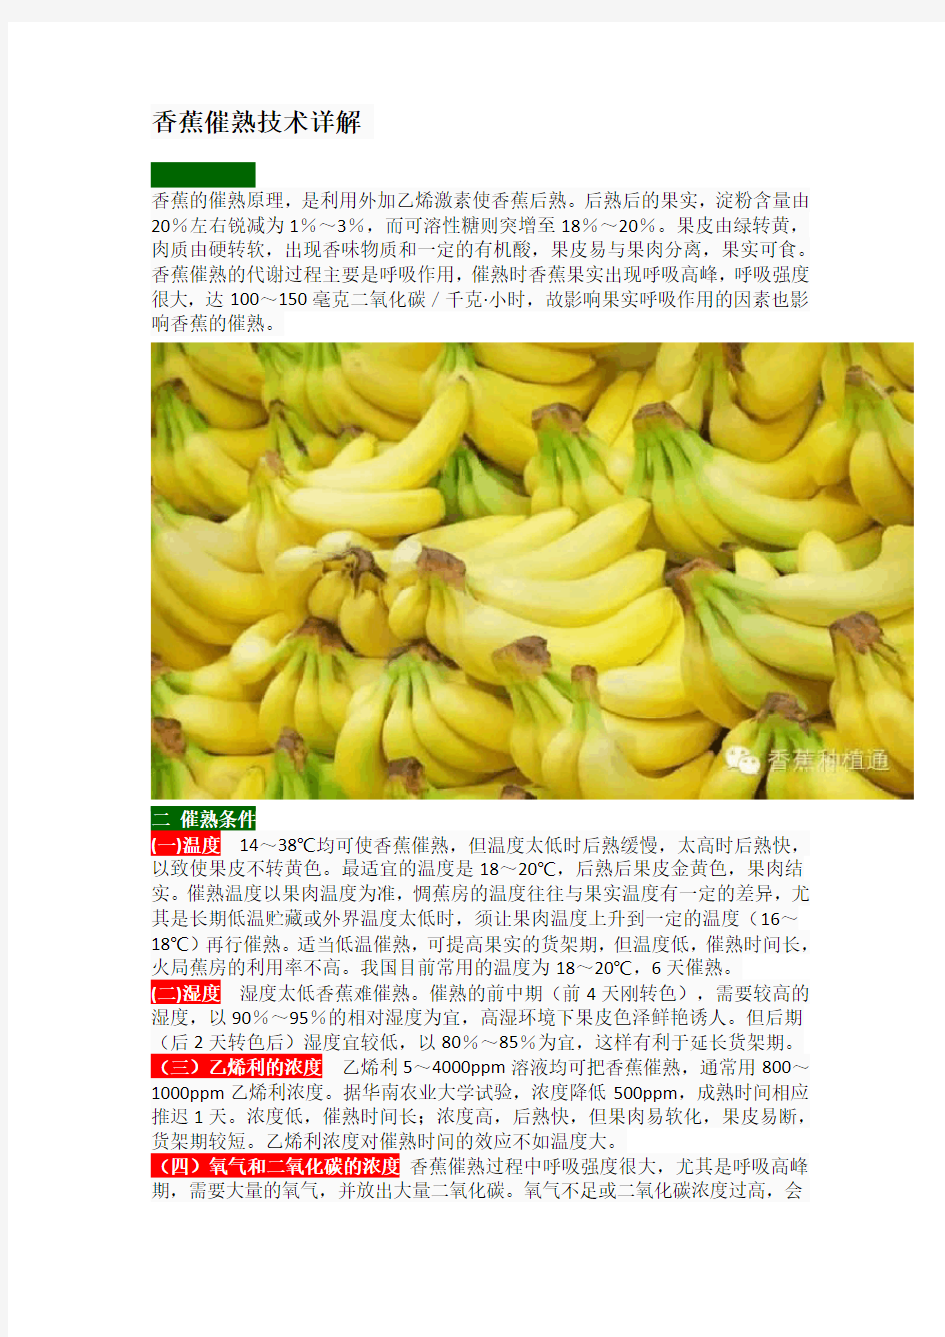 香蕉催熟技术详解